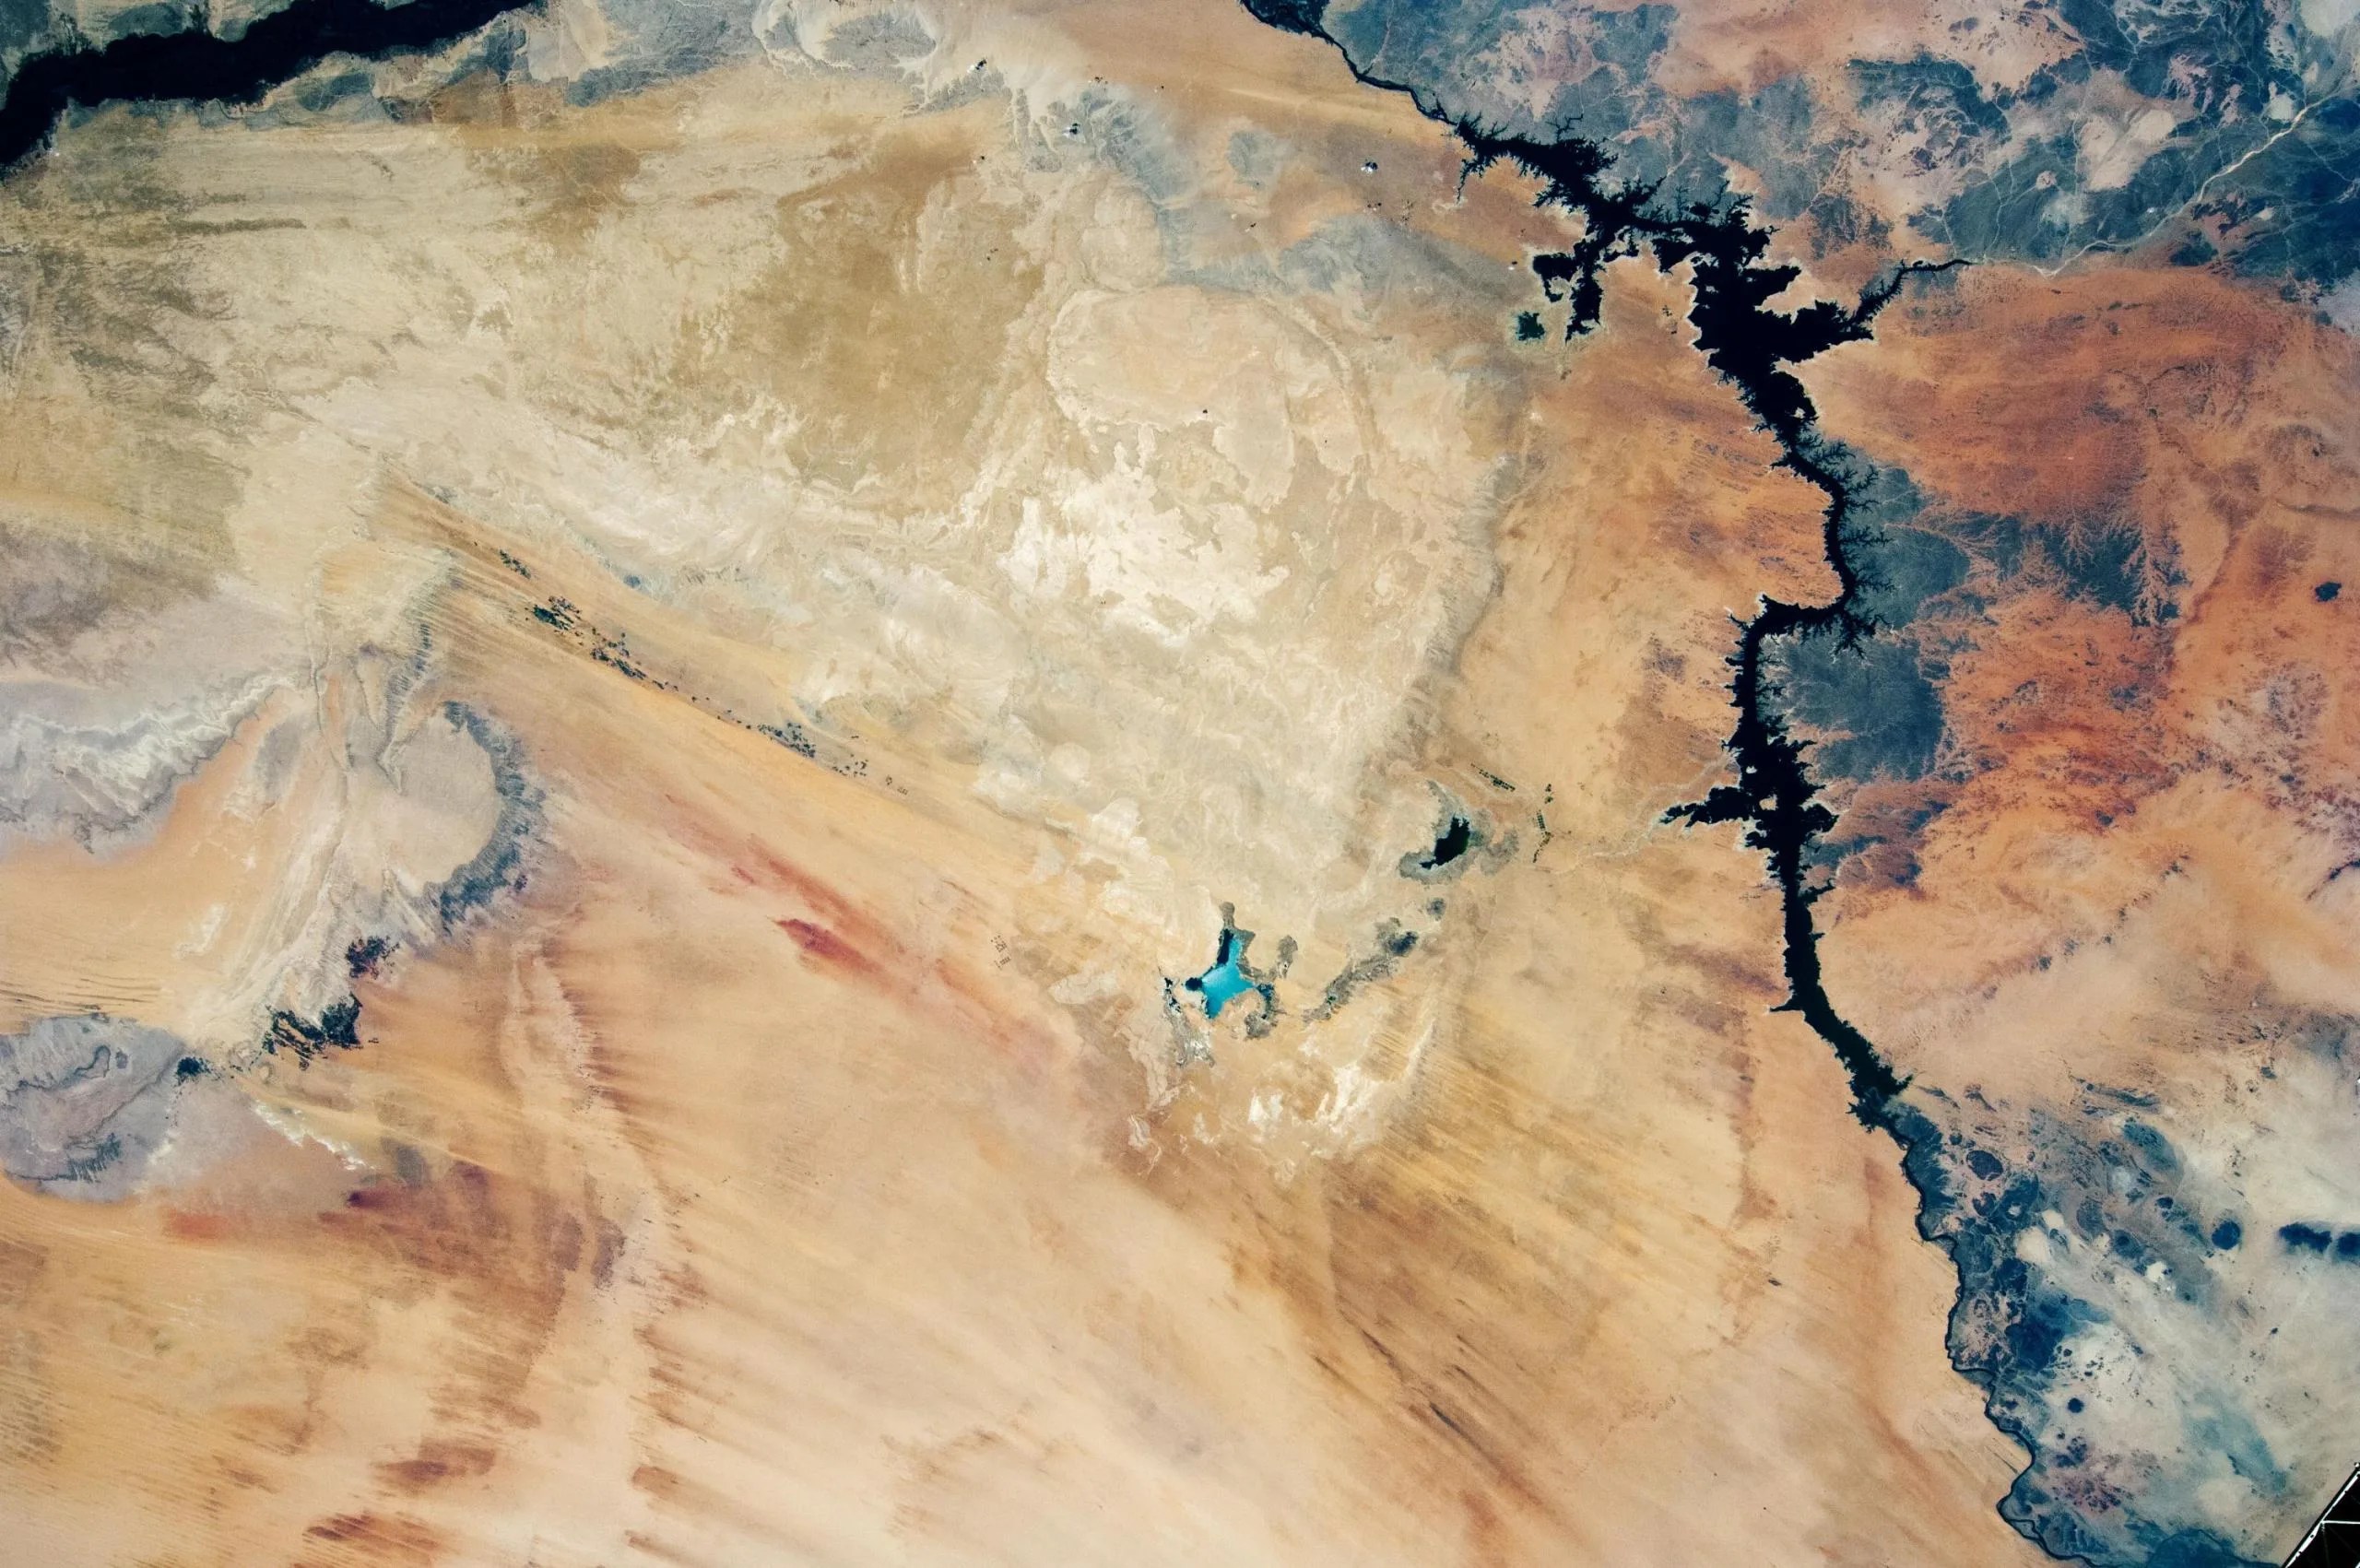 imagen de los Lagos Toshka casi secos en el desierto Sahara tomada en el 2012